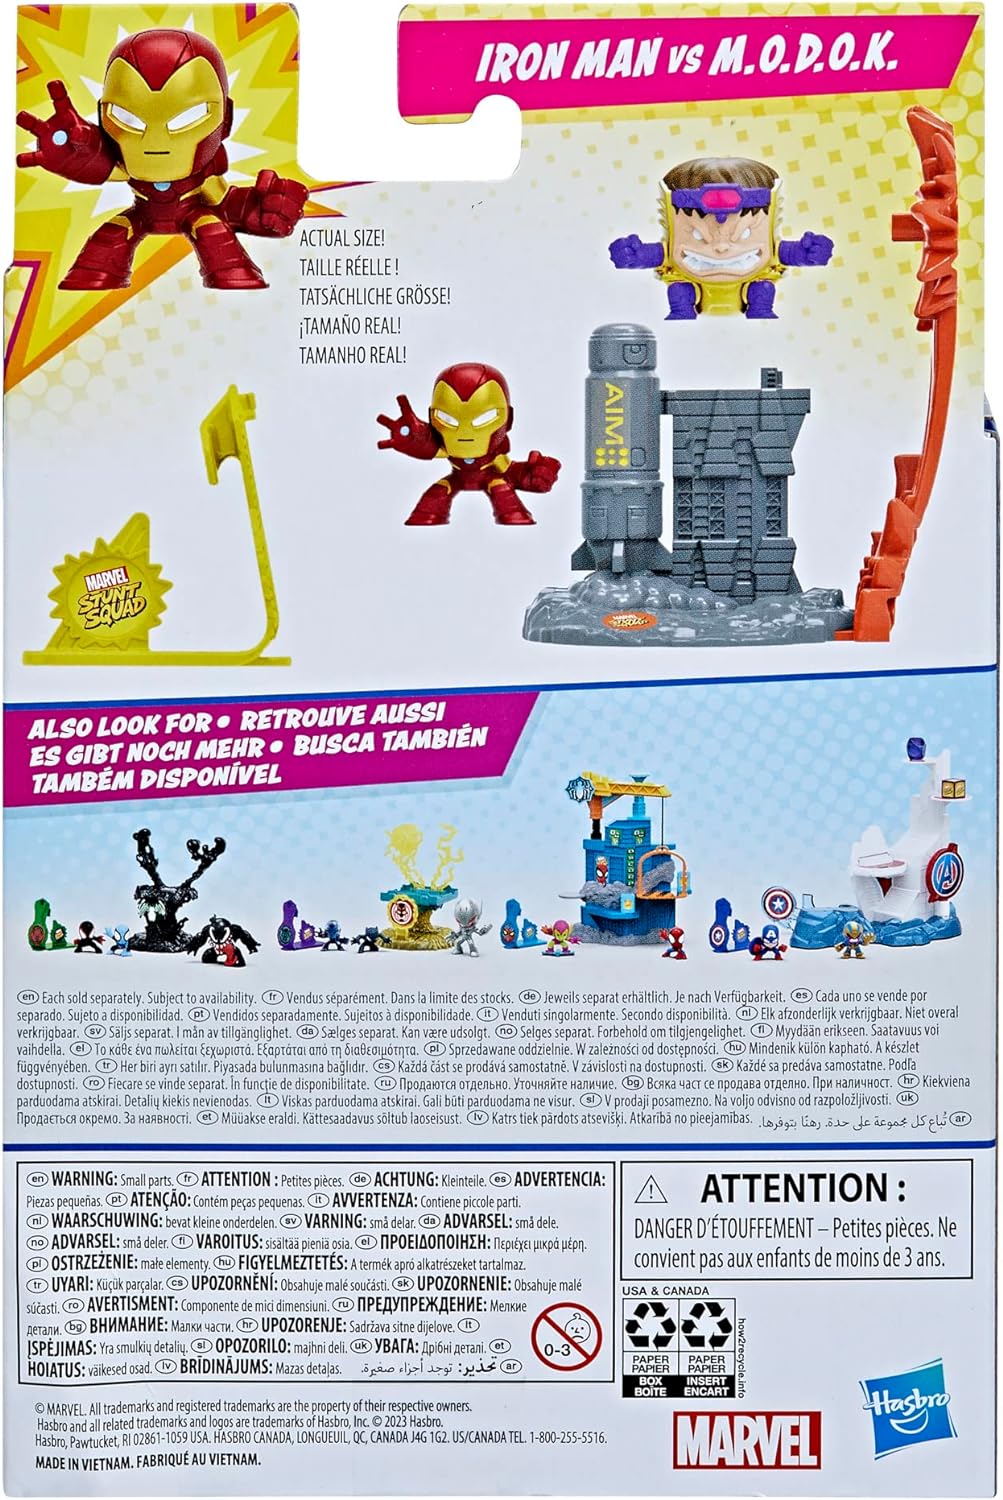 Marvel Stunt Squad - الرجل الحديدي ضد M.O.D.O.K. مجموعة اللعب، شخصيات سوبر هيرو مقاس 1.5 سم، ألعاب للأطفال من سن 4 سنوات فما فوق